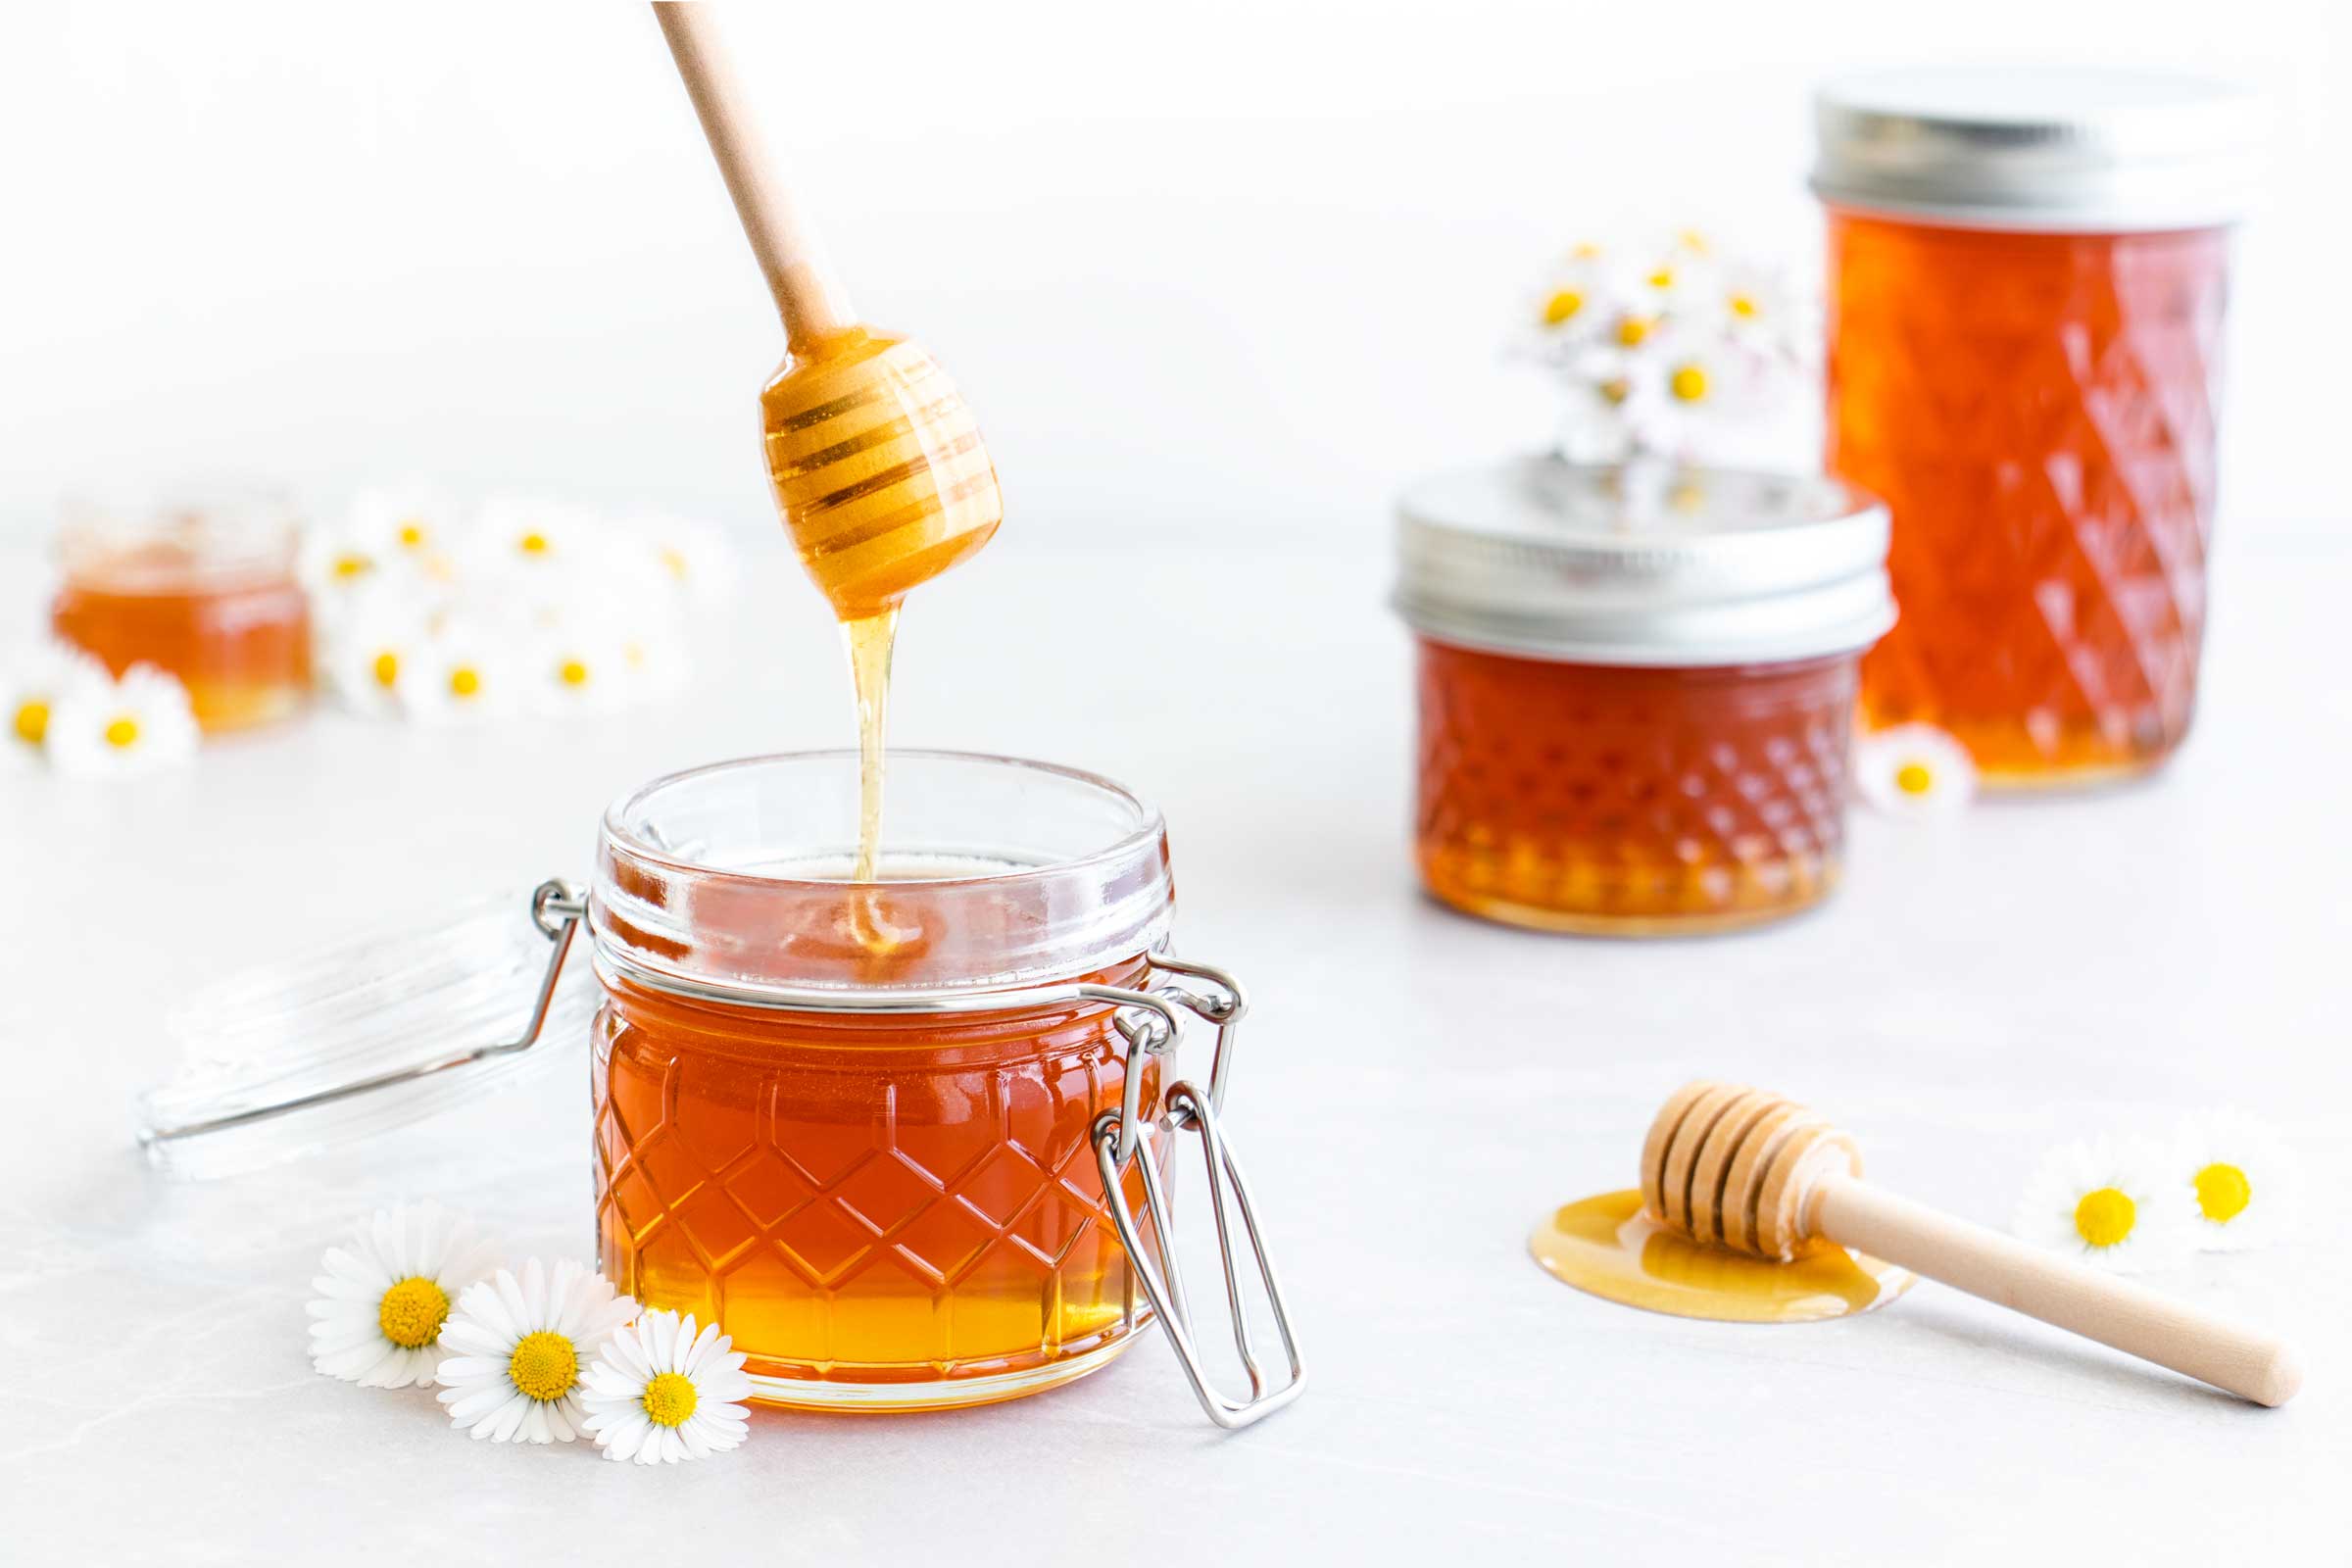 Gänseblümchen-Honig in einem Bügelglas. Von einem Honiglöffel läuft der goldene Gänseblümchen-Honig in das Glas.